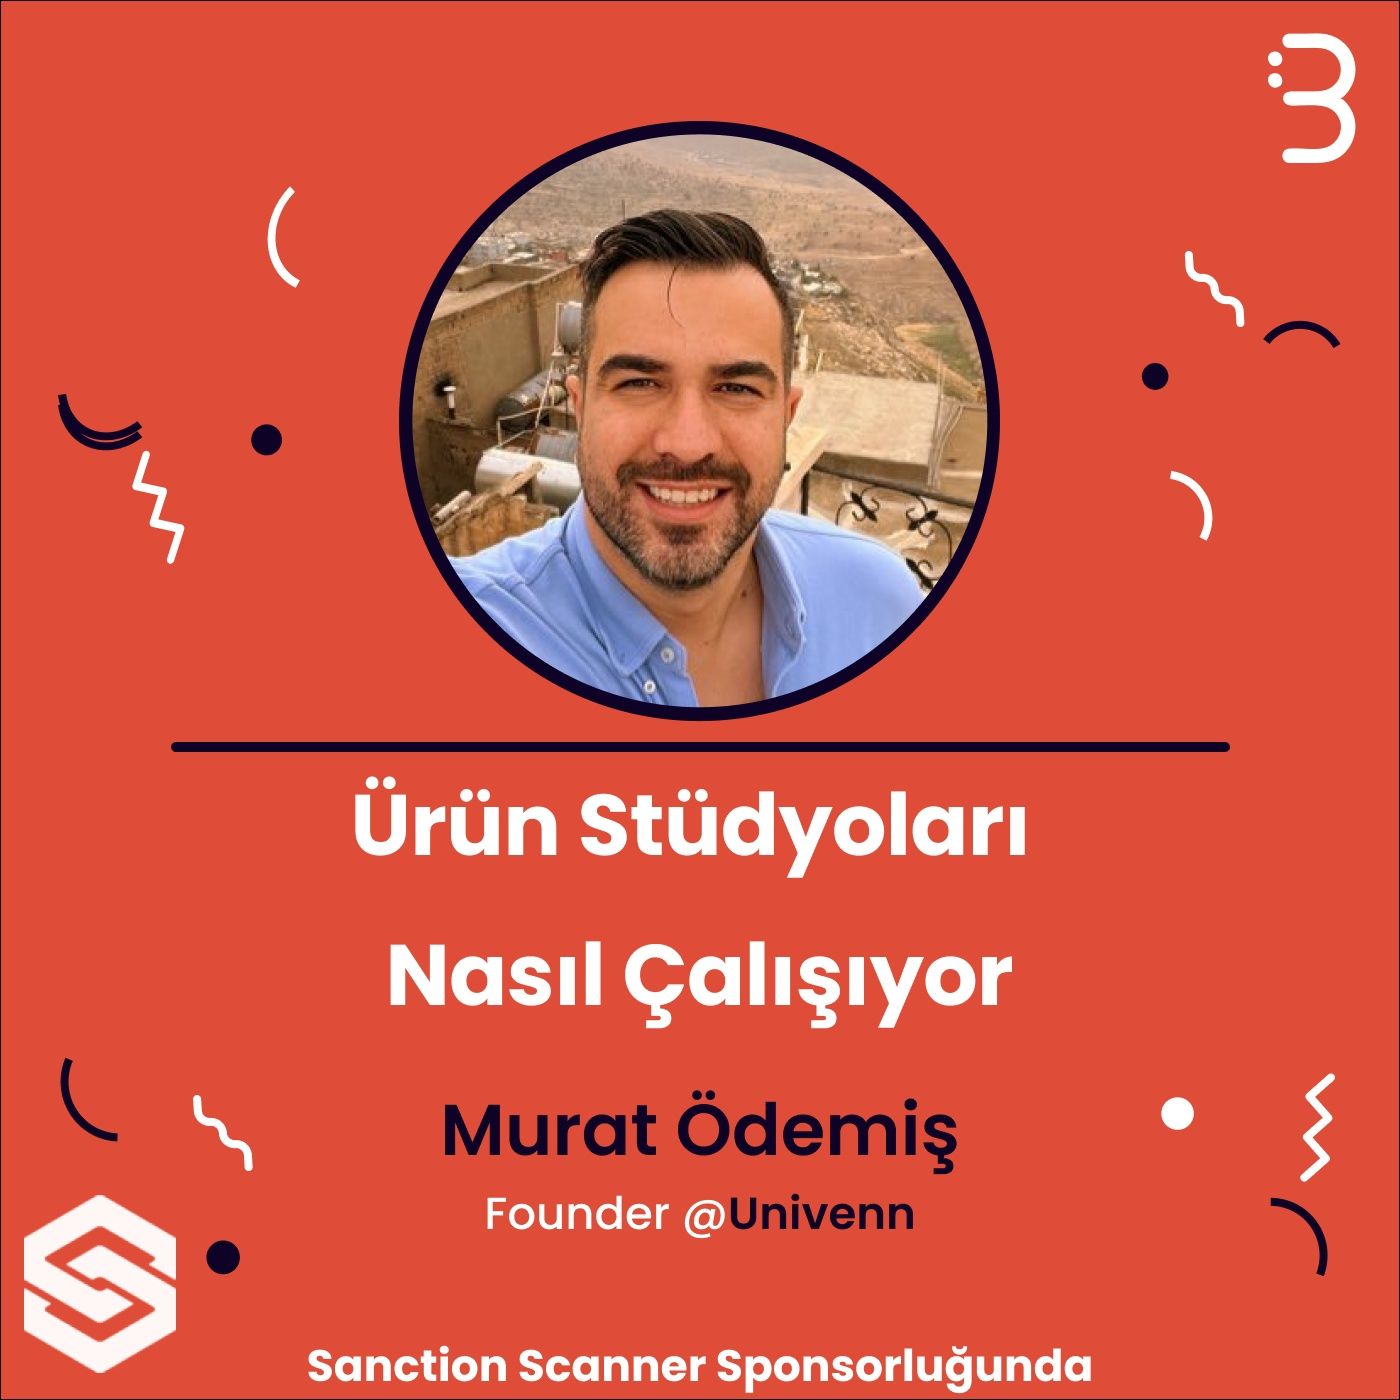 Murat Ödemiş | Univenn - Ürün Stüdyoları Nasıl Çalışıyor